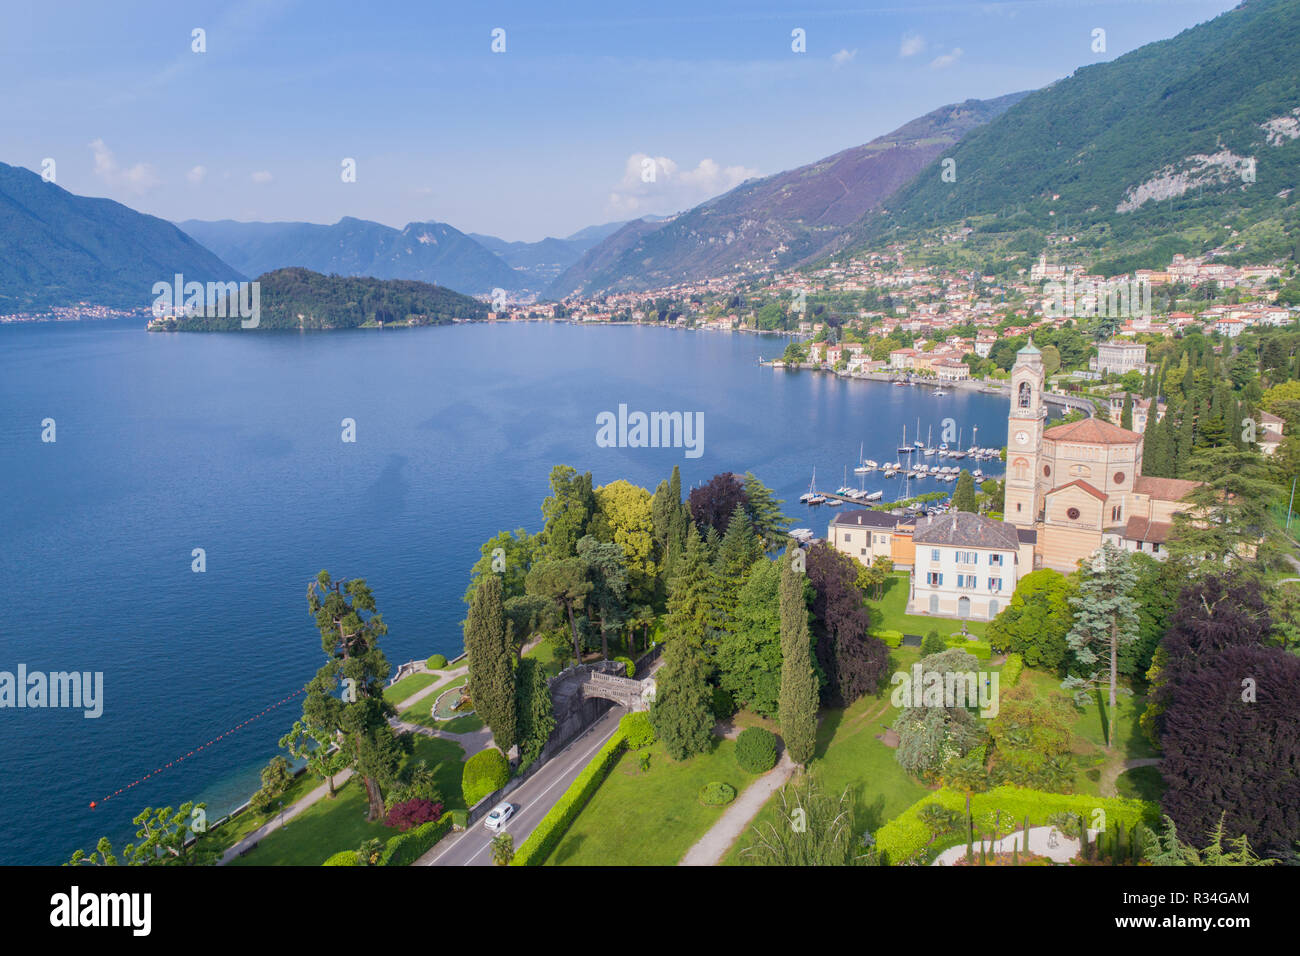 Lake of Como, Tremezzo. Tourist destination Stock Photo